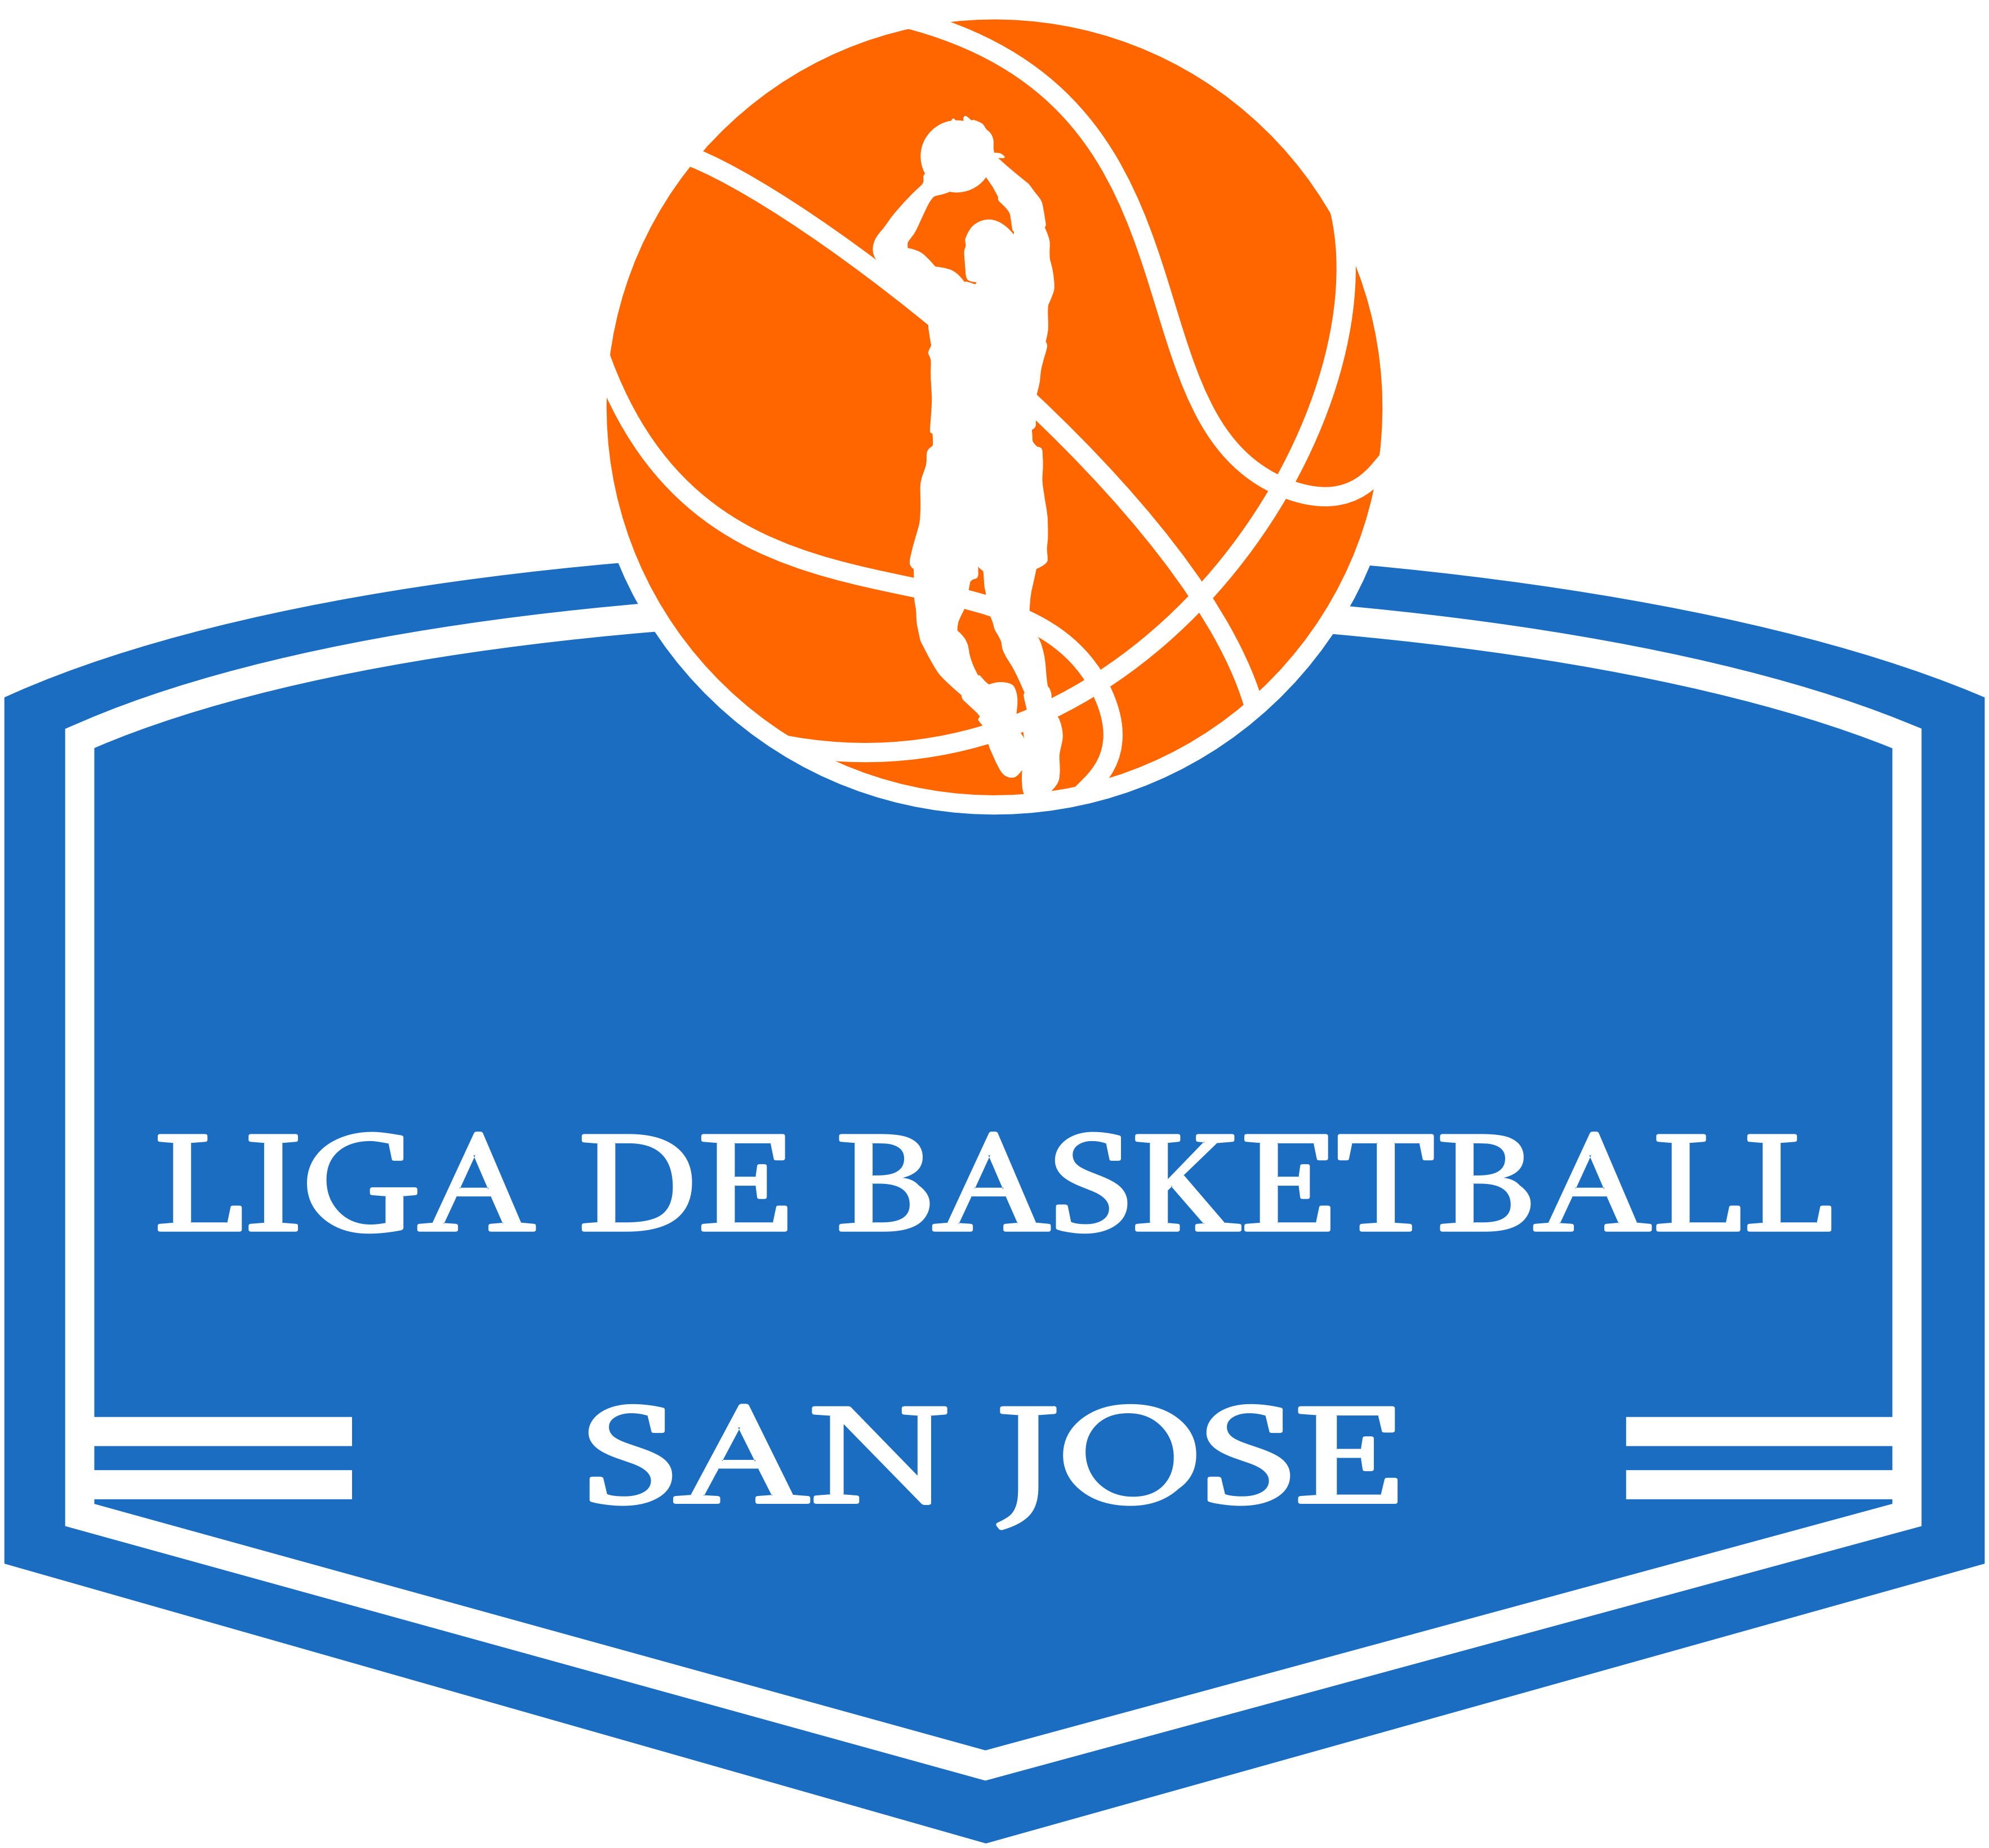 Basquet Liga De Basketball San Jose